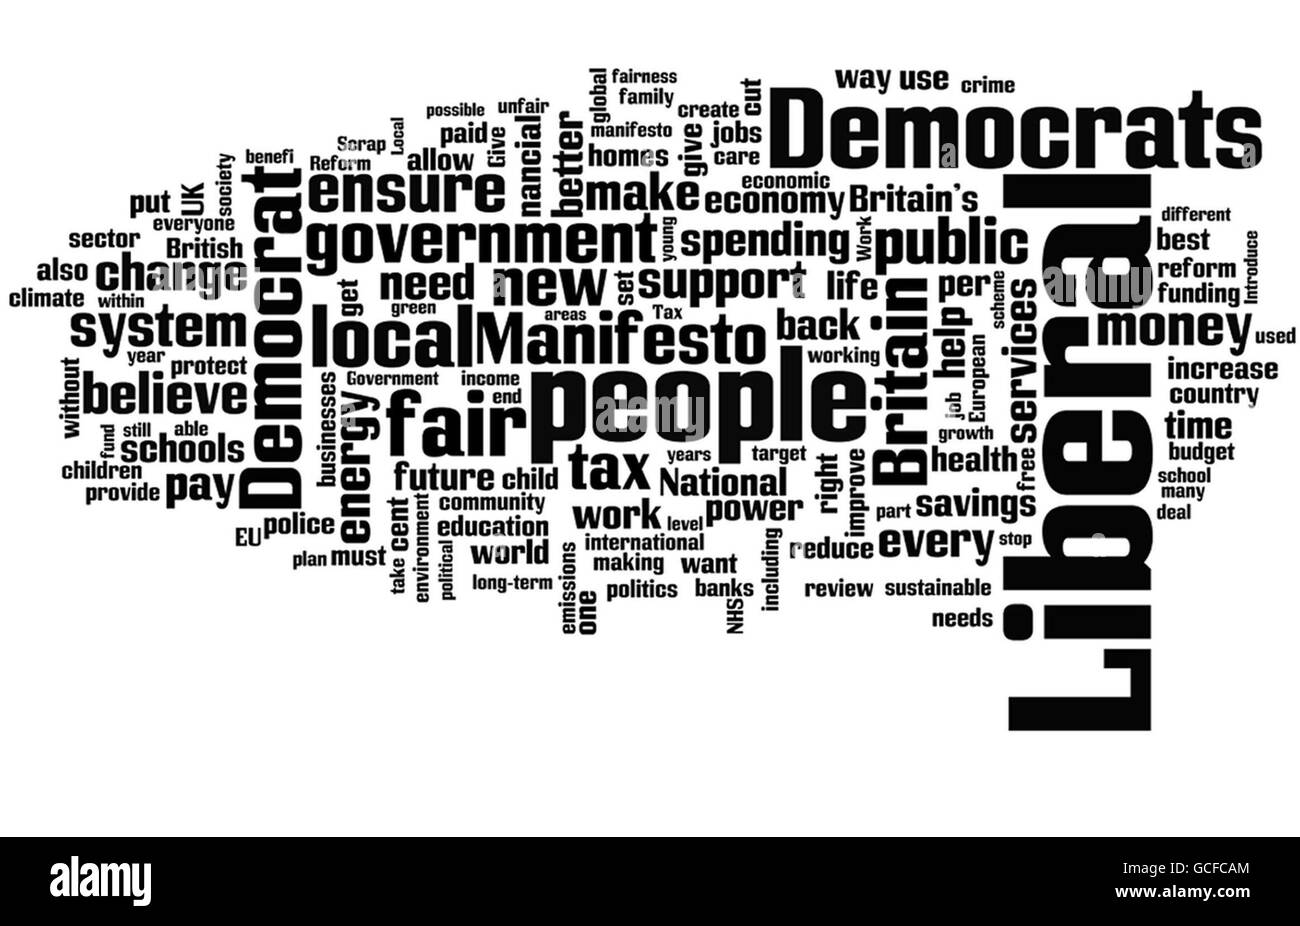 Das Manifest der Liberaldemokratischen Partei, das durch das Internet-Tool wordle.net gesehen wird. Die Verwendung von Wörtern in den drei Hauptmanifesten bietet einen Einblick in die politischen Lexikonparteien Hoffnung wird die Wähler beeinflussen. Stockfoto